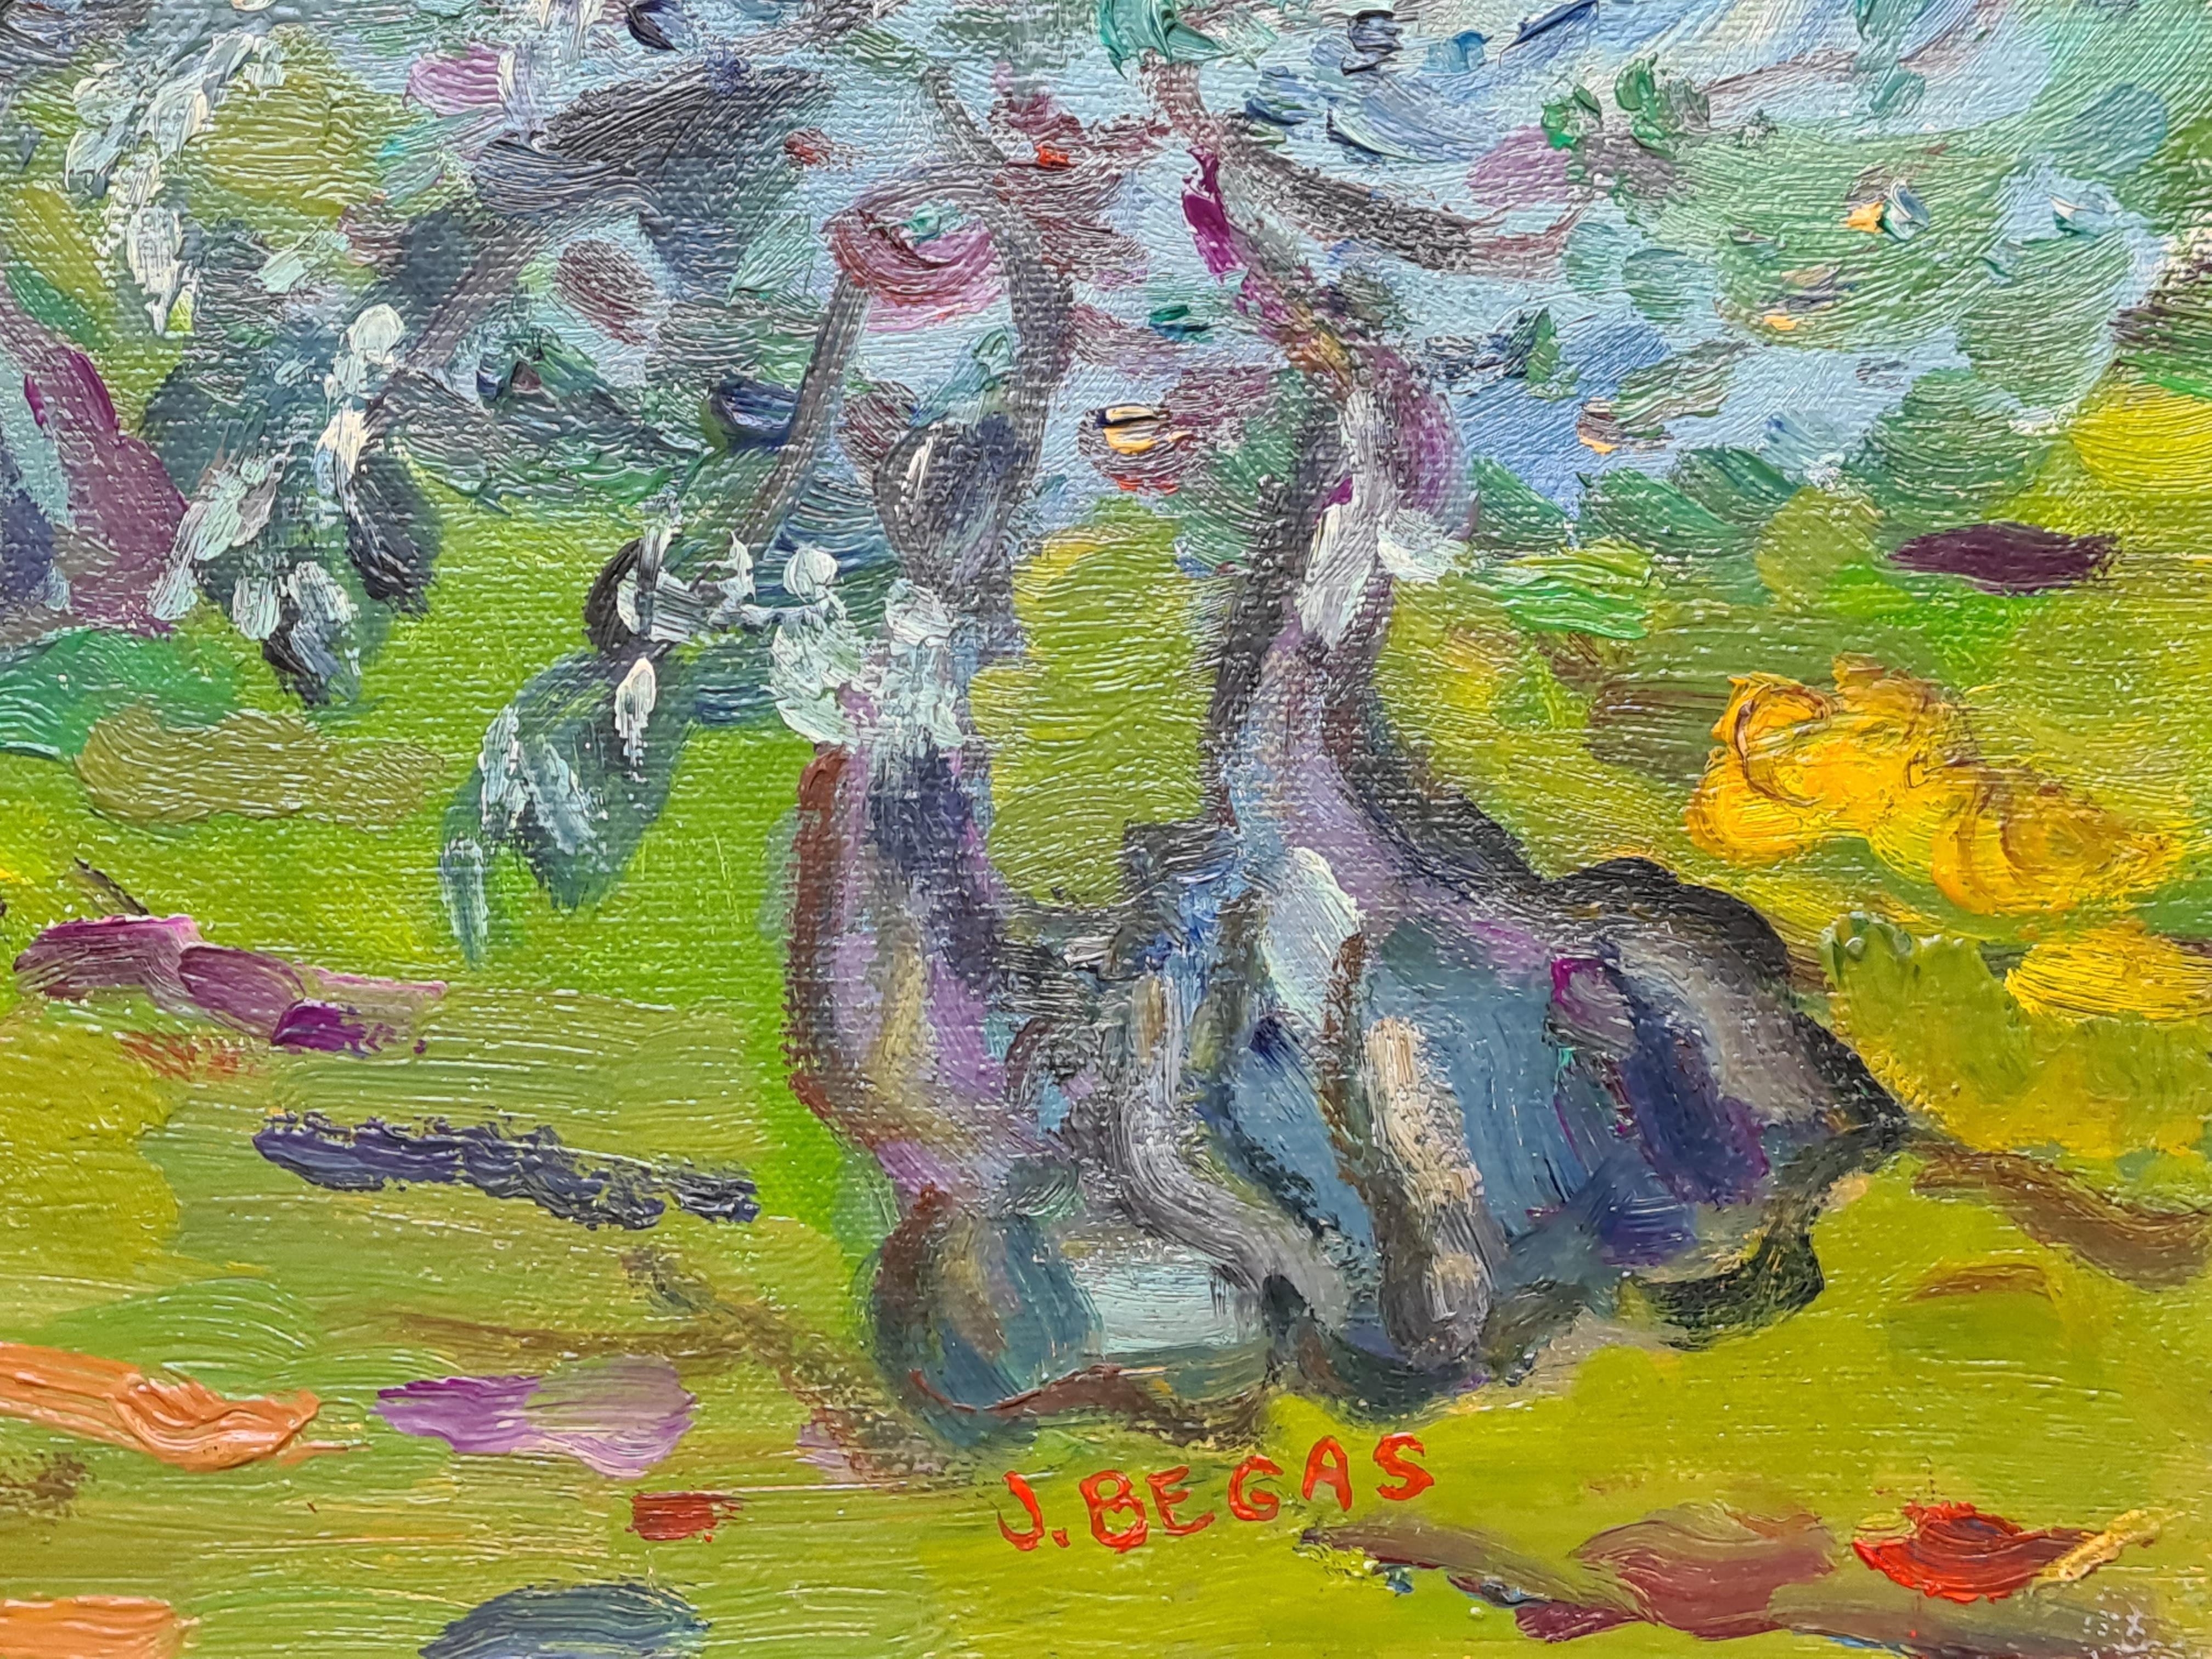 Les Oliviers, paysage rural post-impressionniste du sud de la France - Post-impressionnisme Painting par Jacques Begas